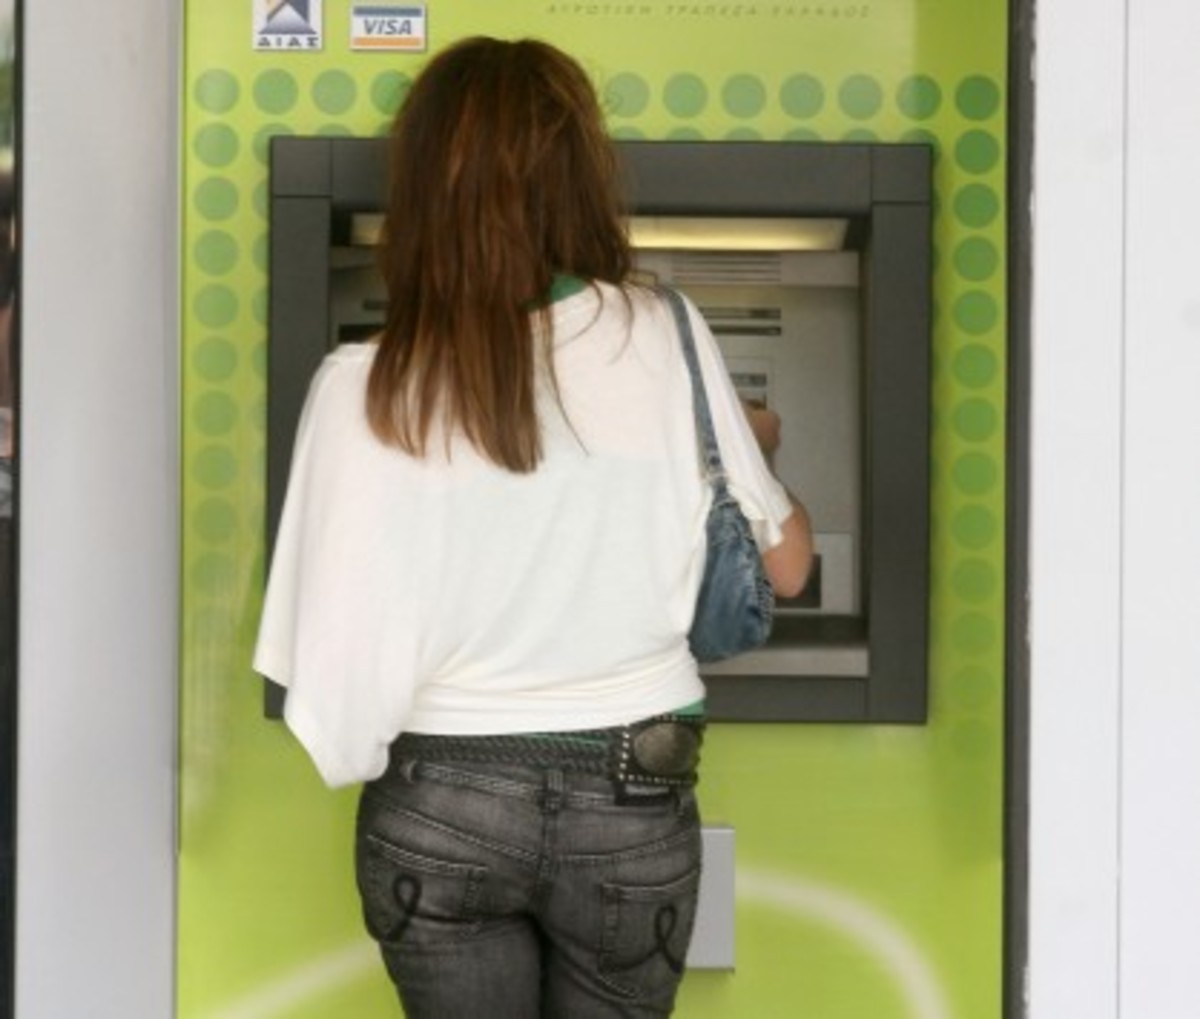 Θεσσαλονίκη: Το τραπεζικό της υπόλοιπο μειώθηκε κατά 1.100 ευρώ – Το μεγάλο λάθος της γυναίκας!